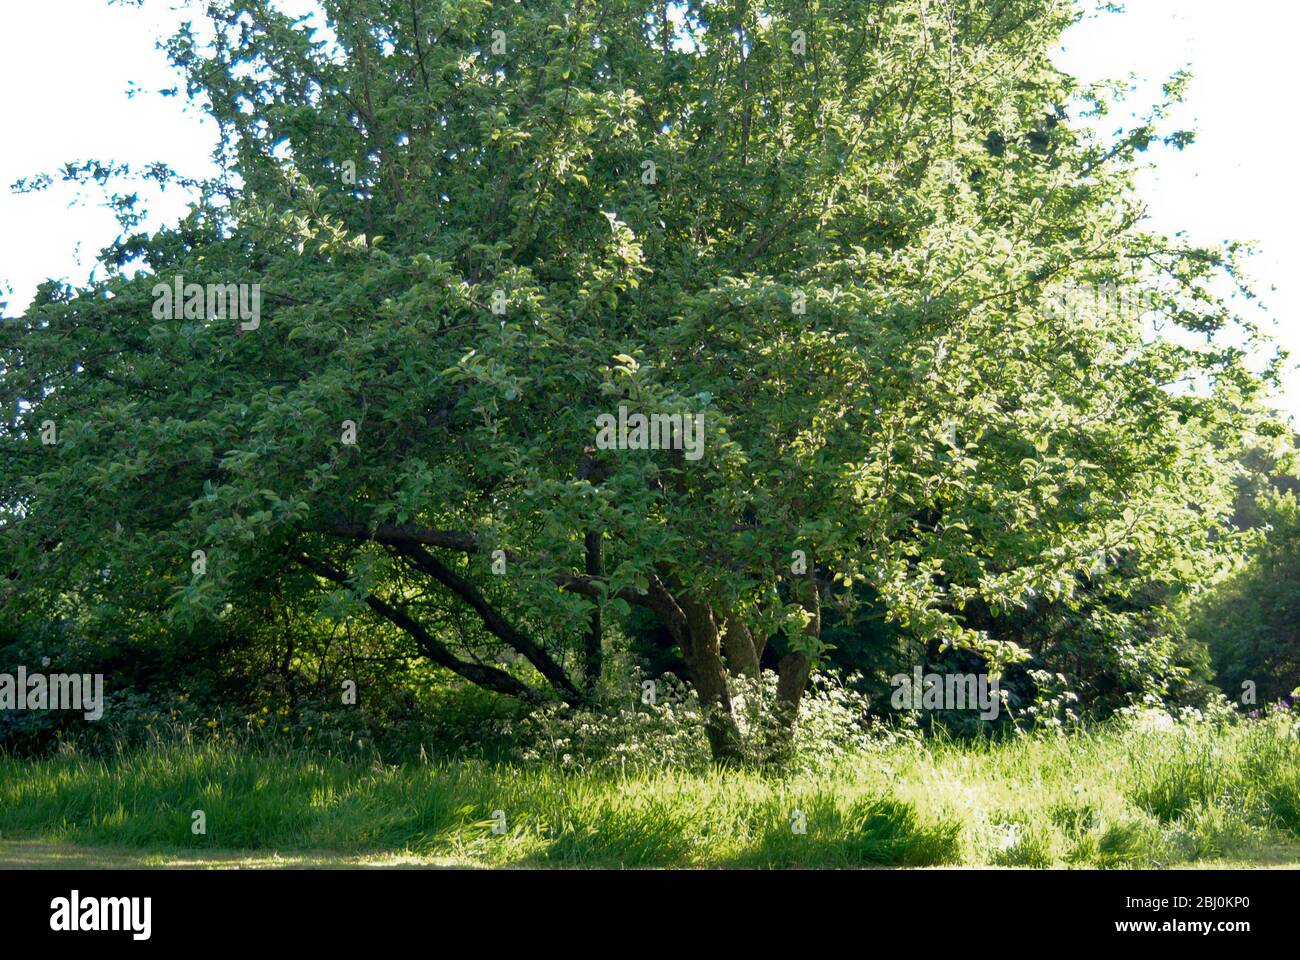 El árbol de manzana en el césped largo en el jardín de Kentish viejo, Reino Unido - Foto de stock